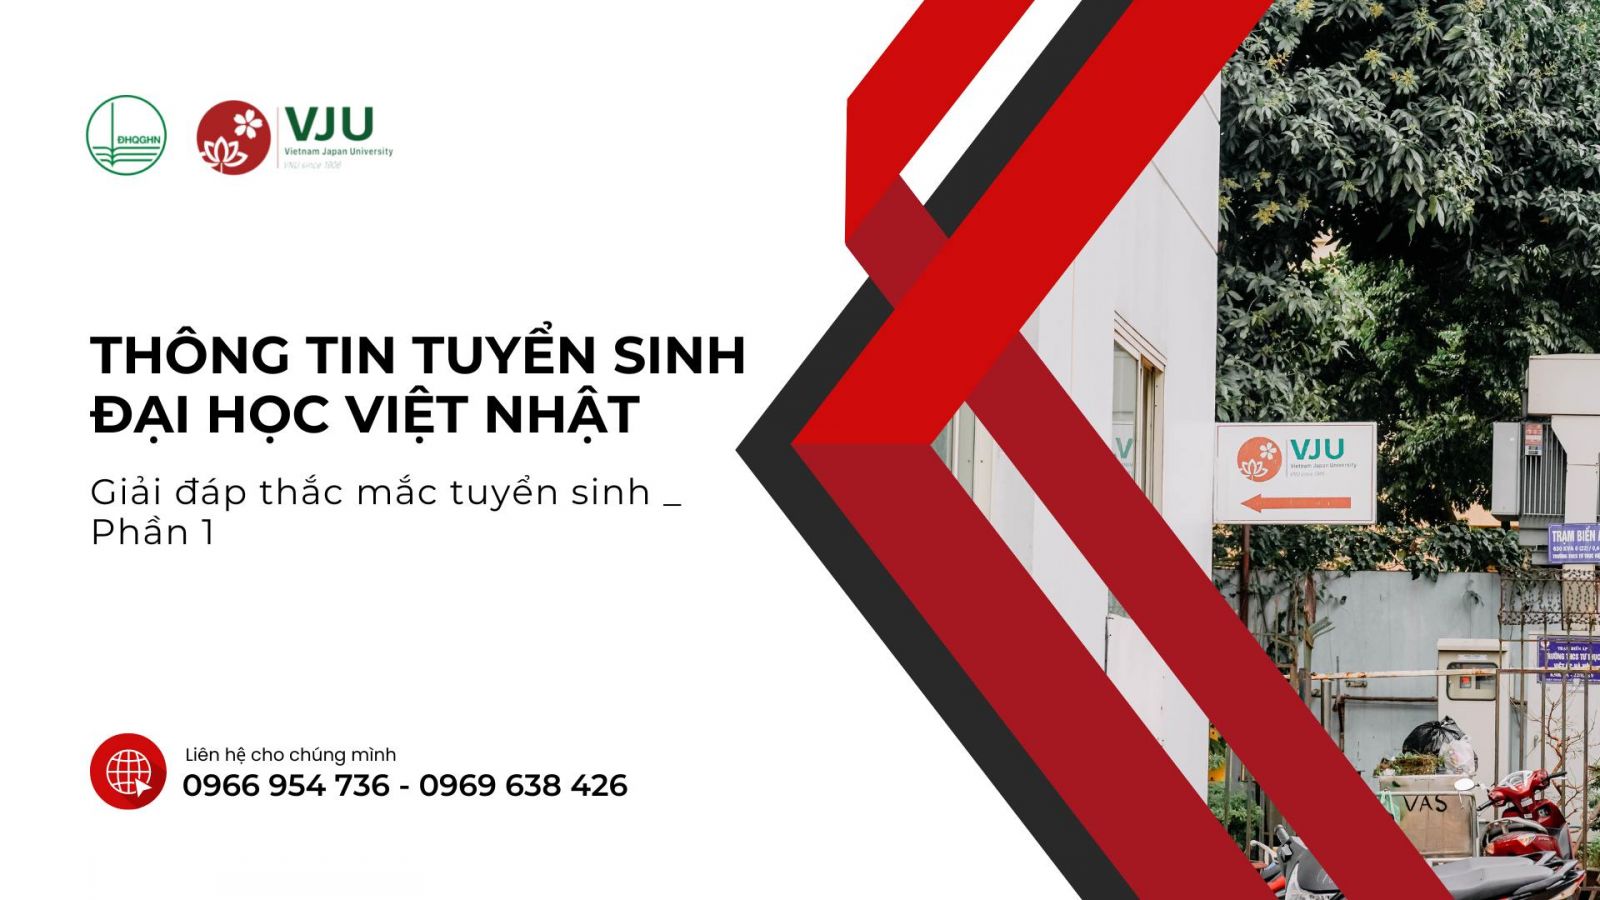 Trường Đại học Việt Nhật  Đại học Quốc gia Hà Nội công bố thông tin tuyển  sinh năm 2022  TUYỂN SINH HƯỚNG NGHIỆP